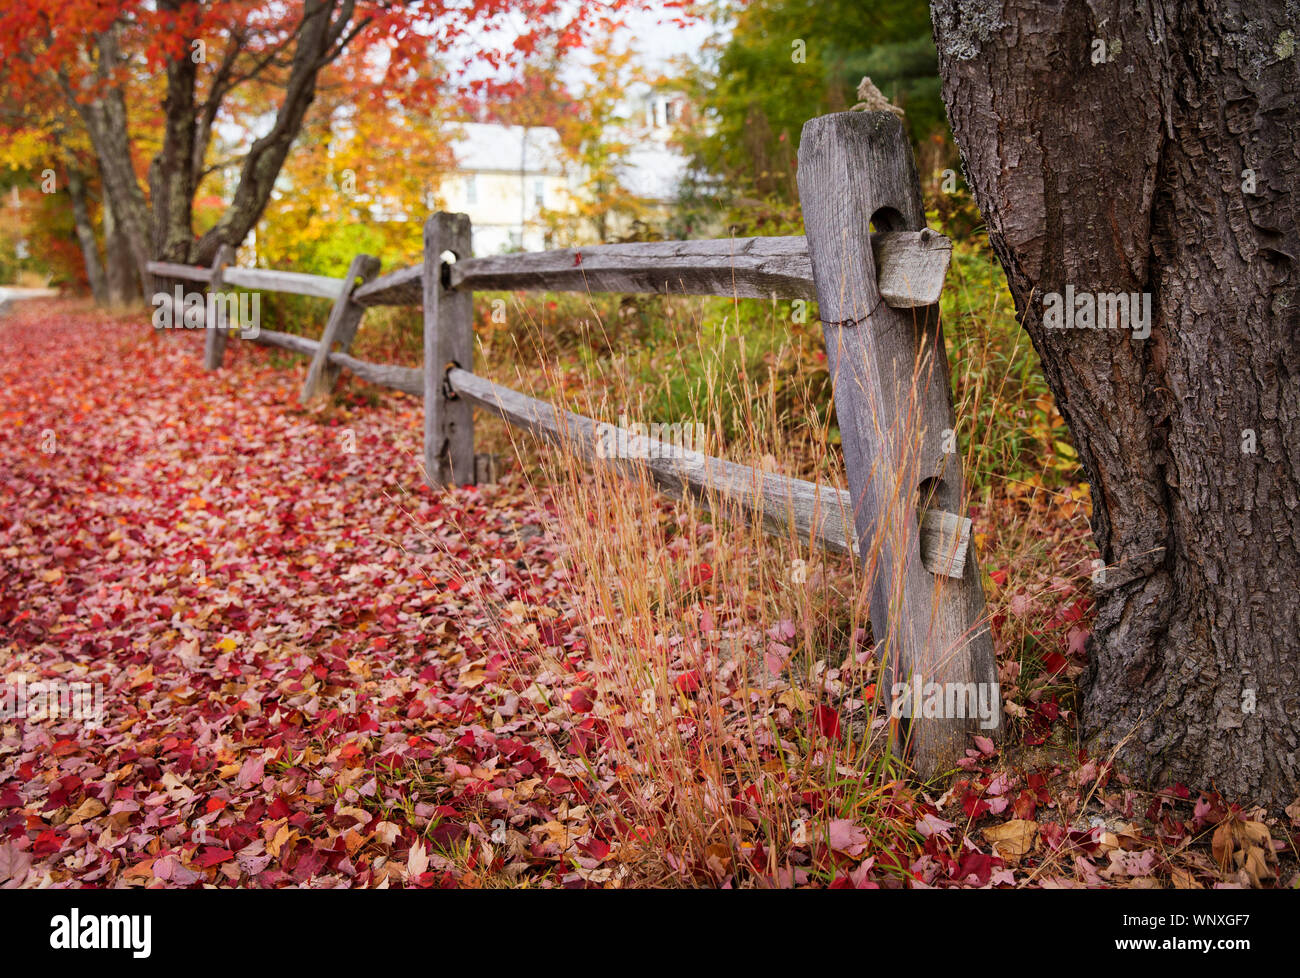 Abfallzeit in New England. Fahren Landstraßen bringt sie letzten Herbst saisonal Szenen mit bunten Bäumen und alten Zaun Linien. Leaf peeping Vermont Stockfoto